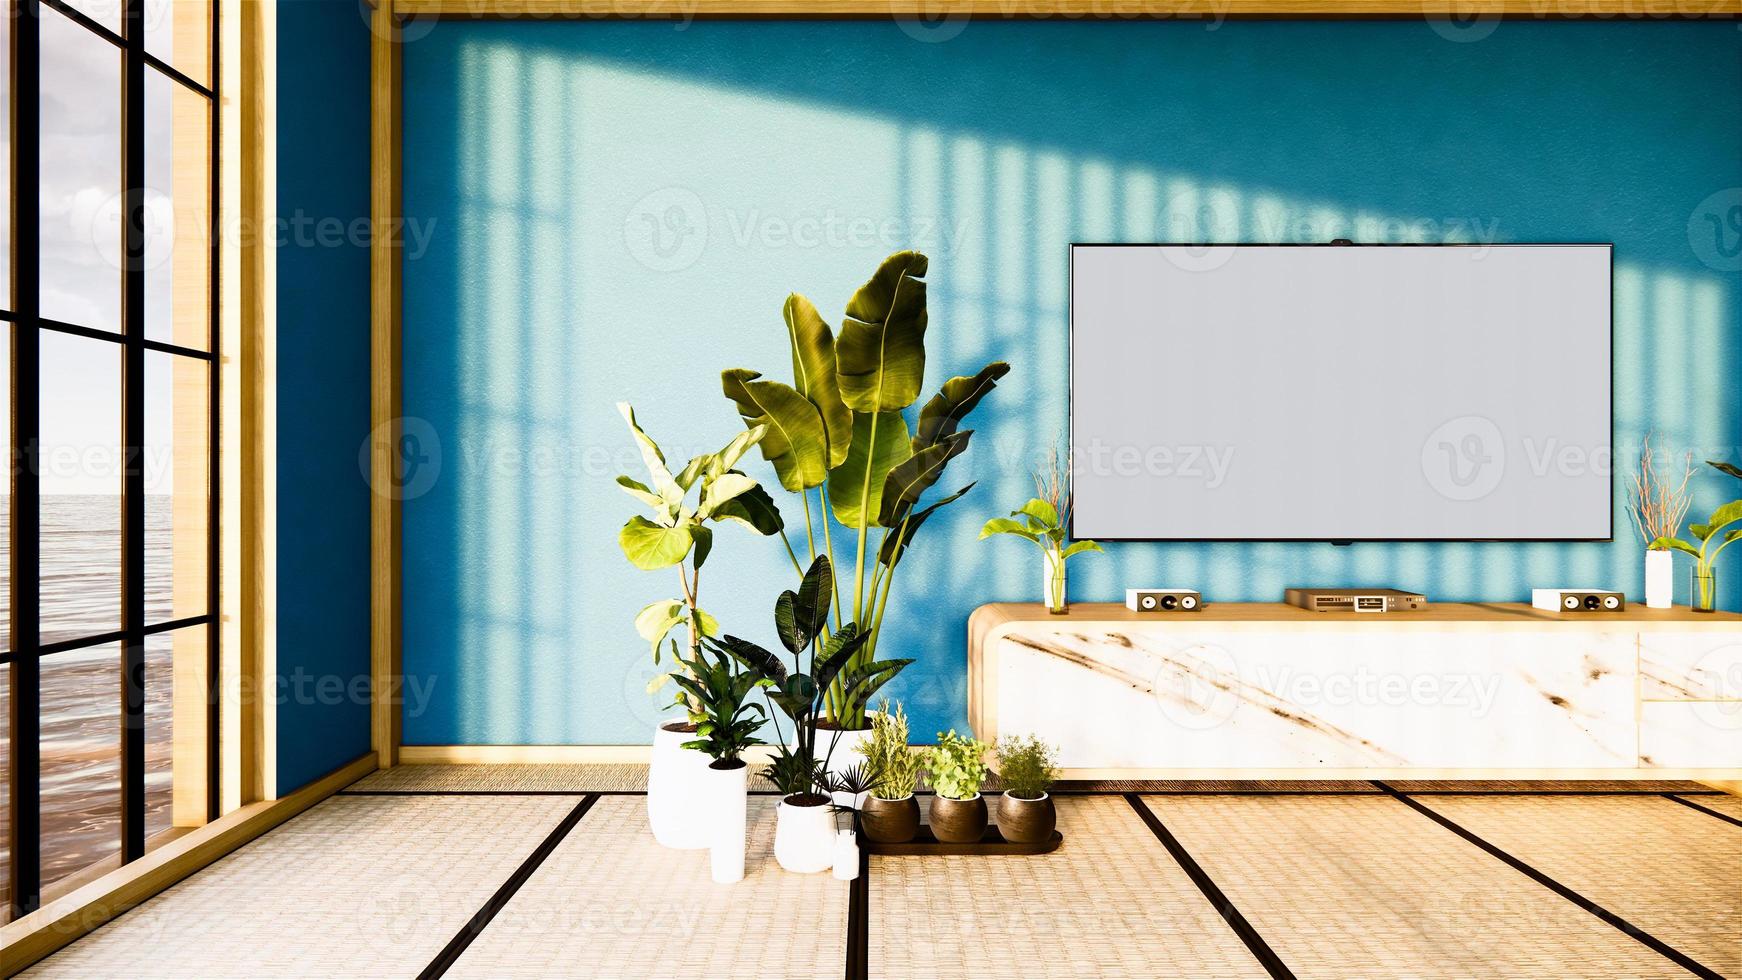 tv-kast in Japanse woonkamer op blauwe hemelmuurachtergrond, 3D-rendering foto